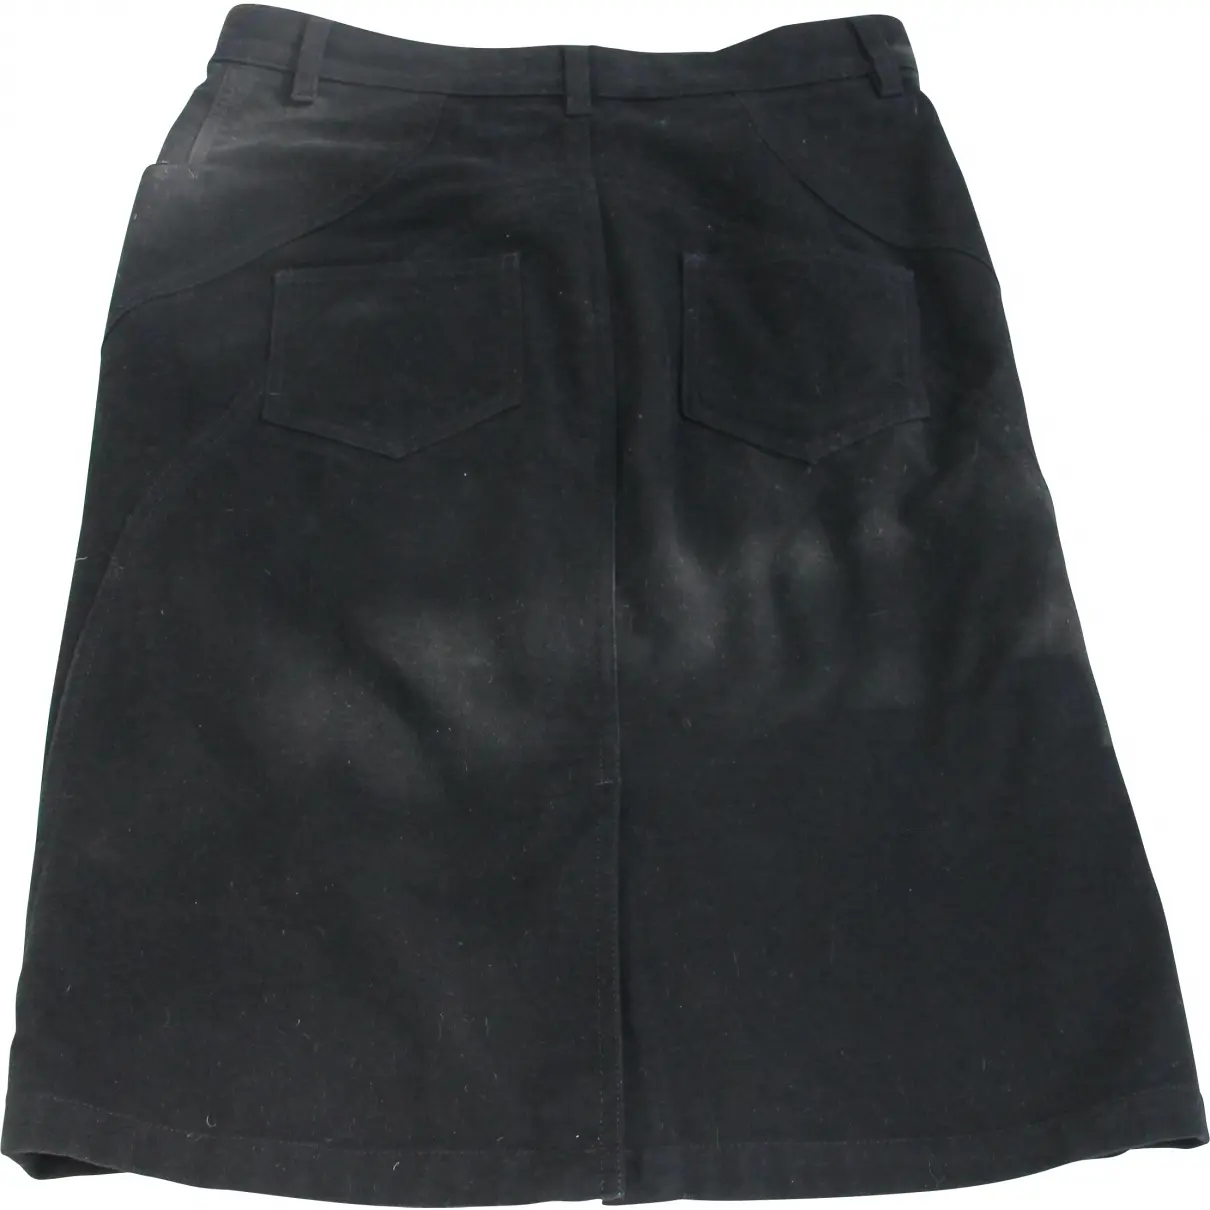 Black Wool Skirt The Kooples Sport